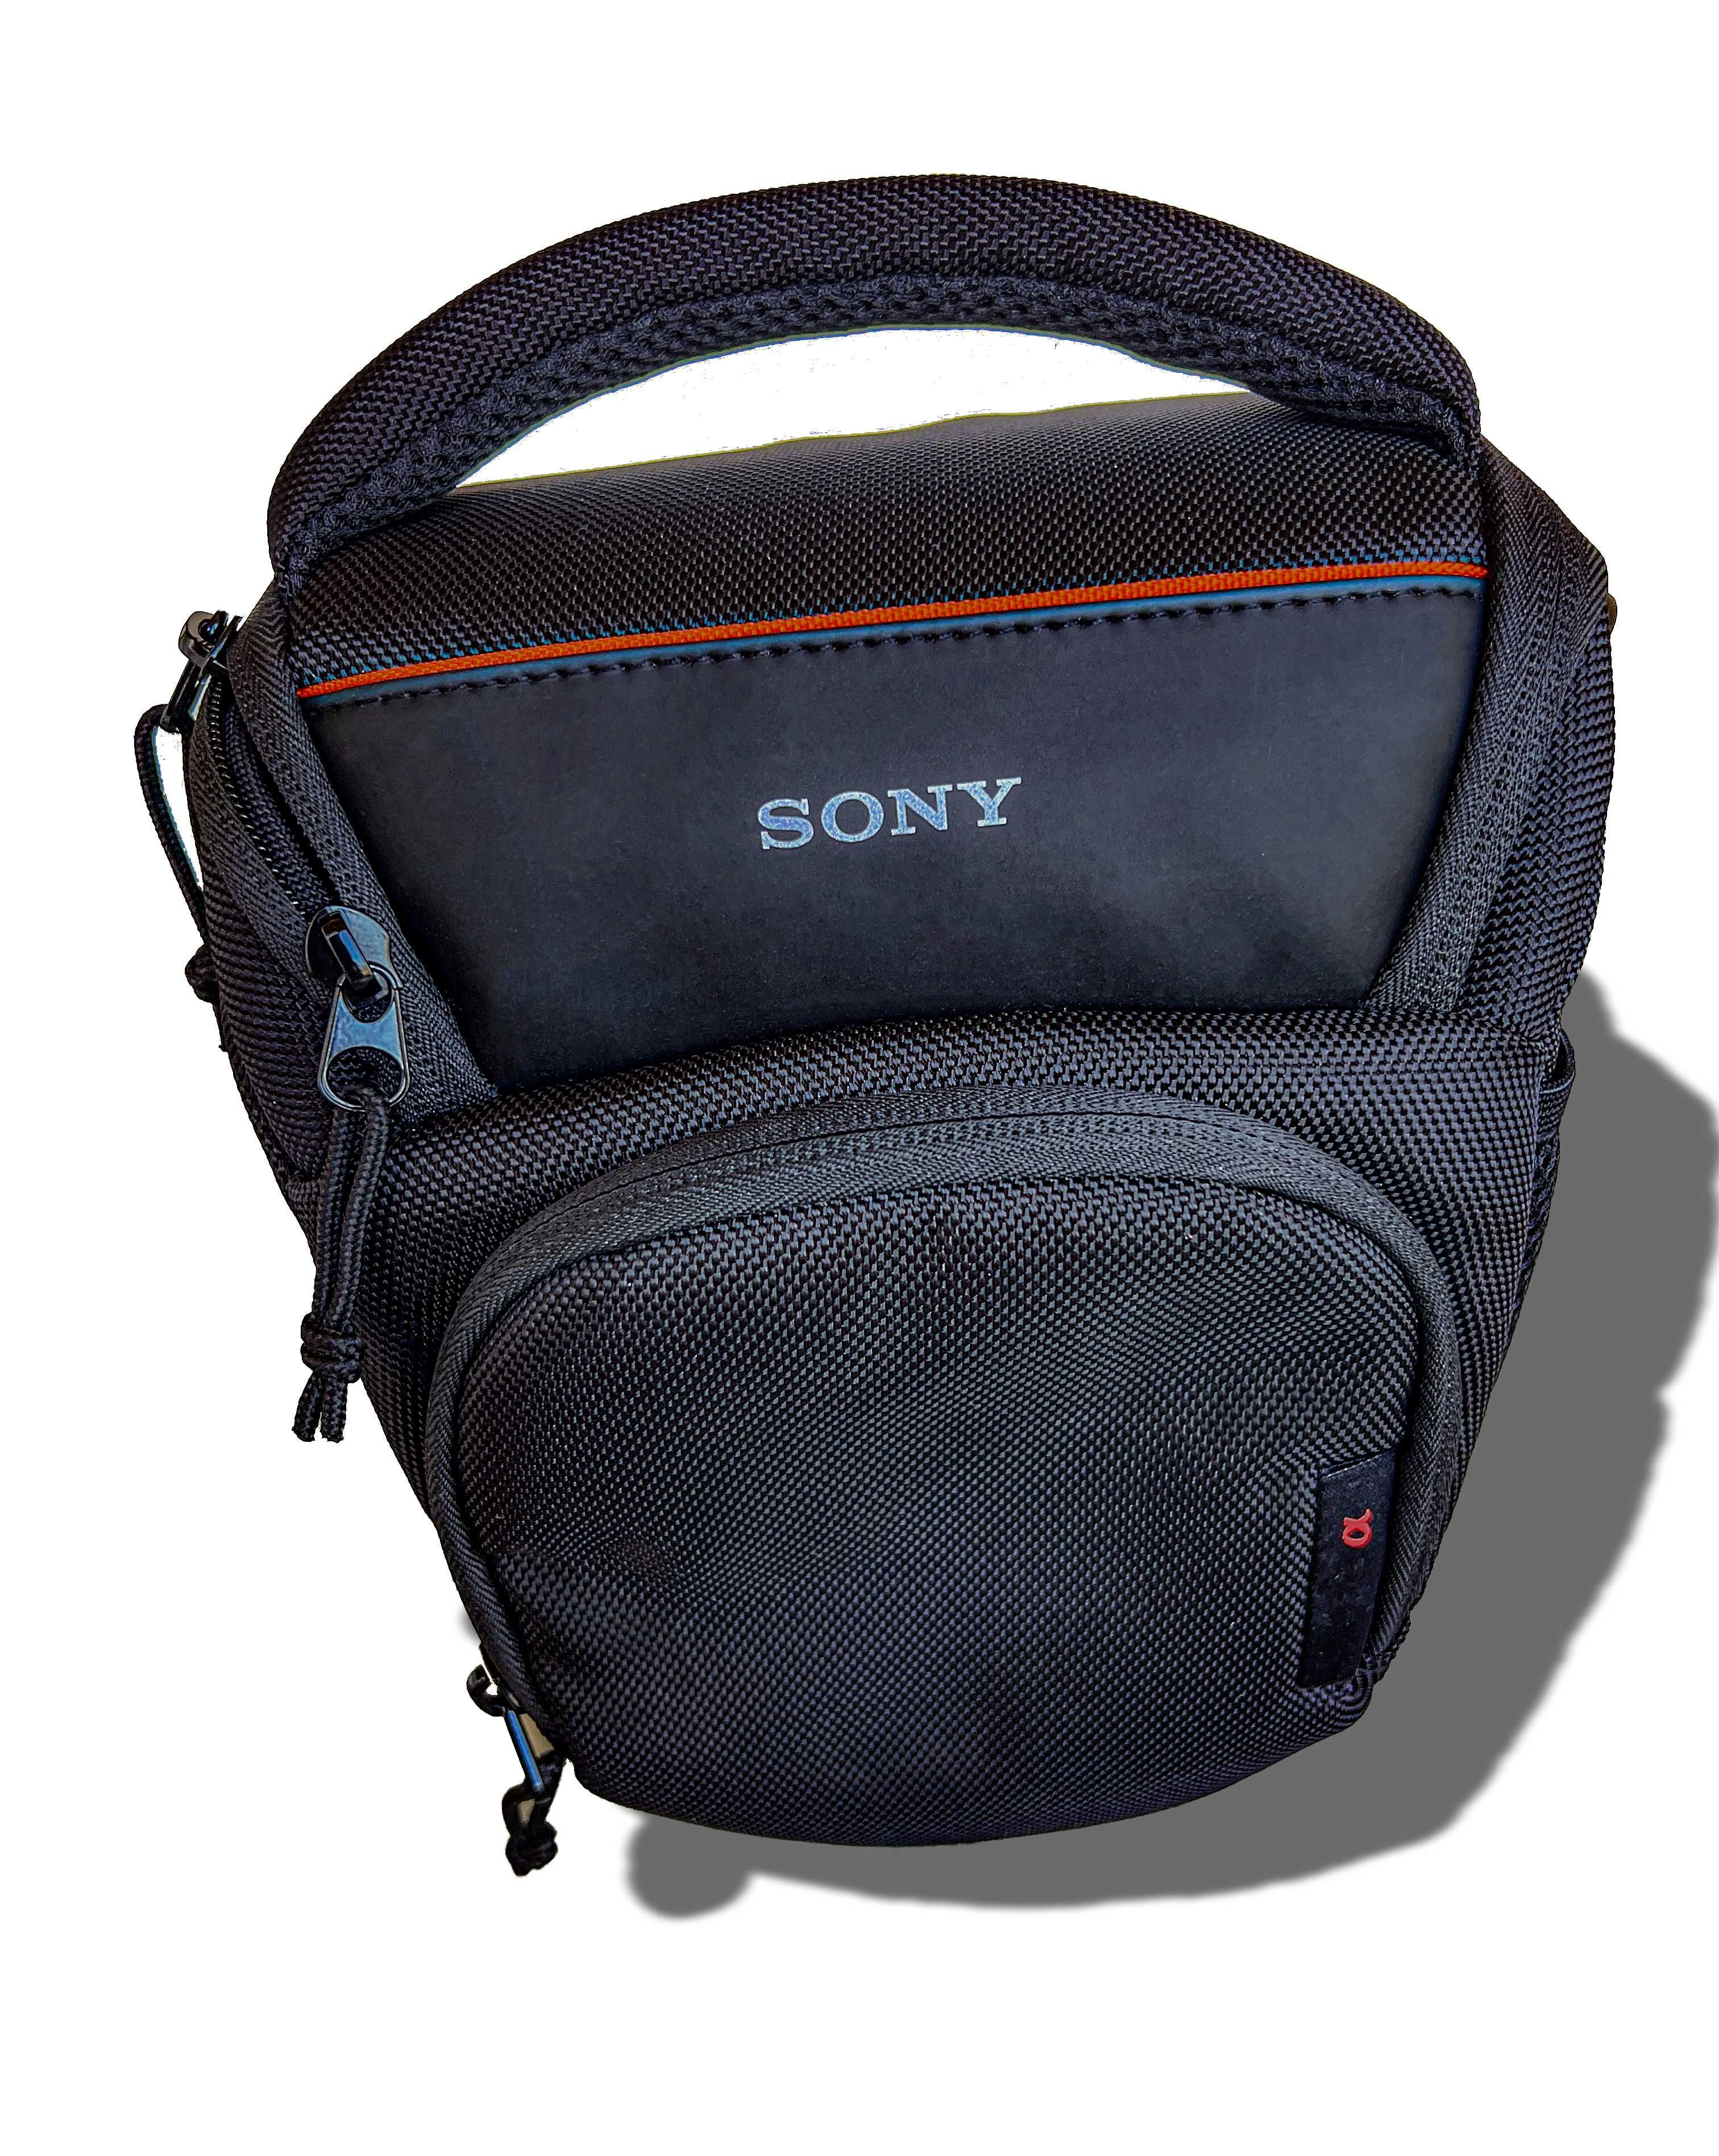 Bolsa para Sony Alpha câmaras nova